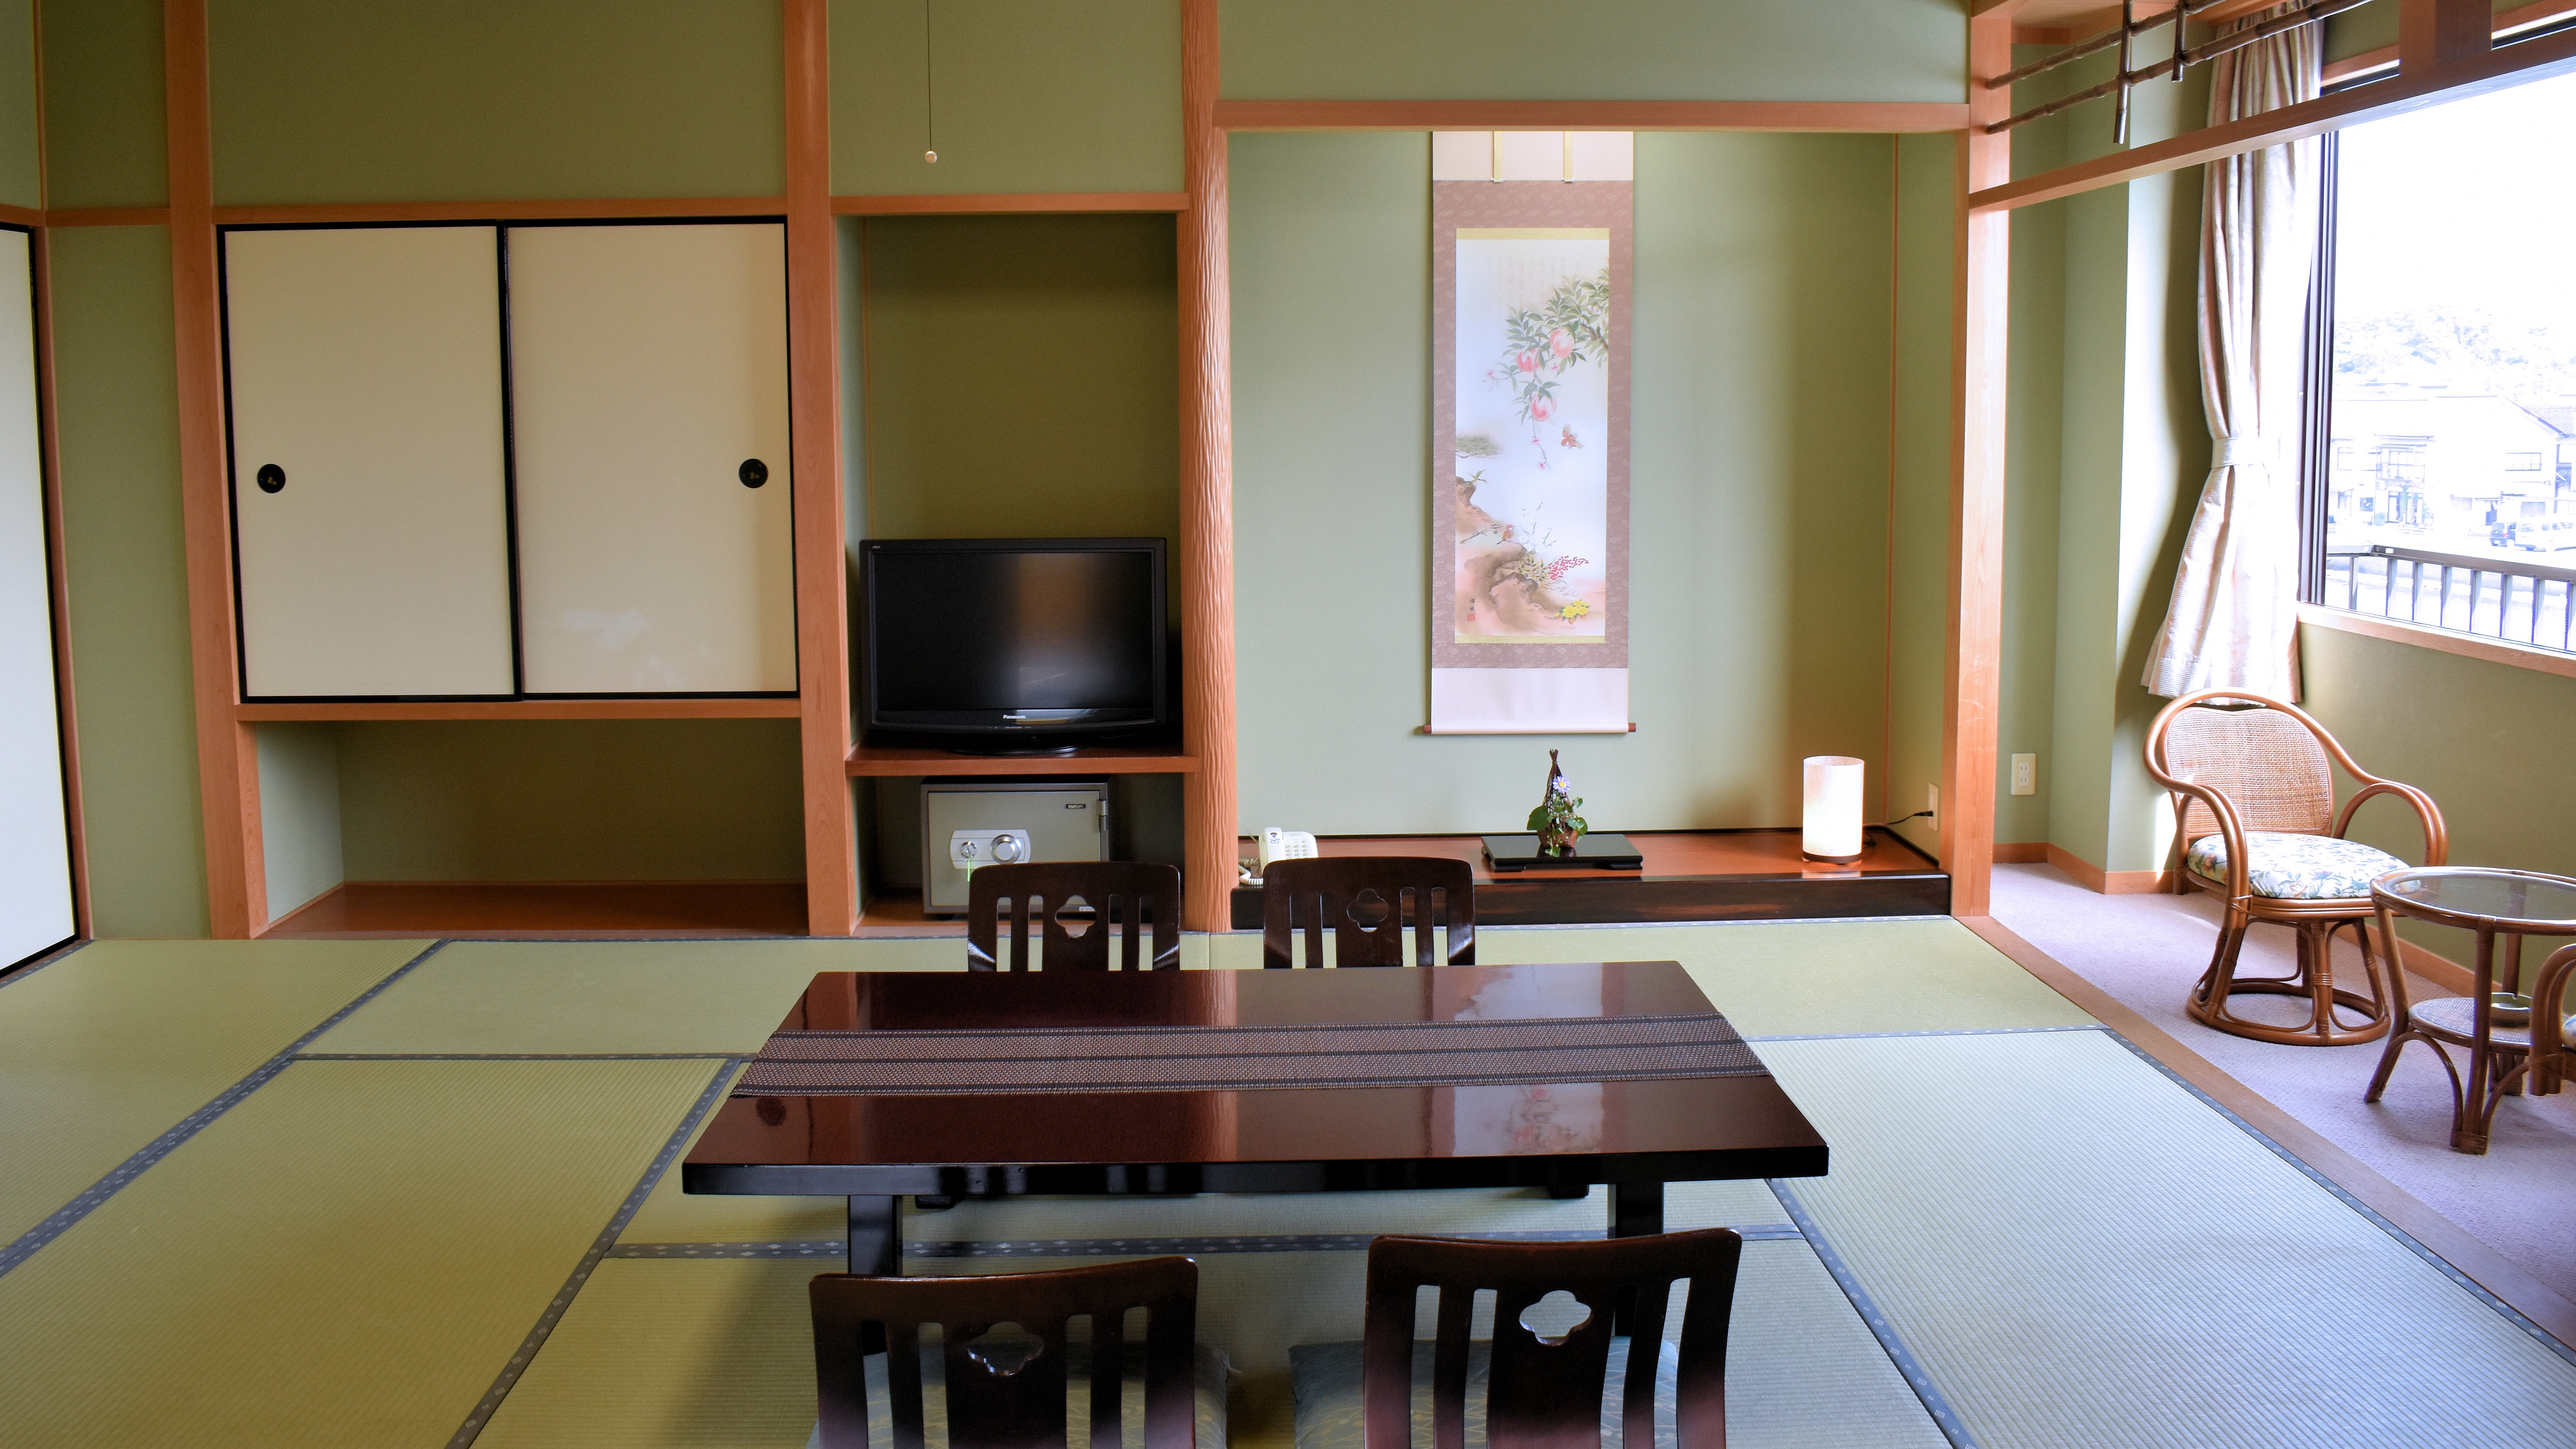 坂本屋は全室、和風客室です